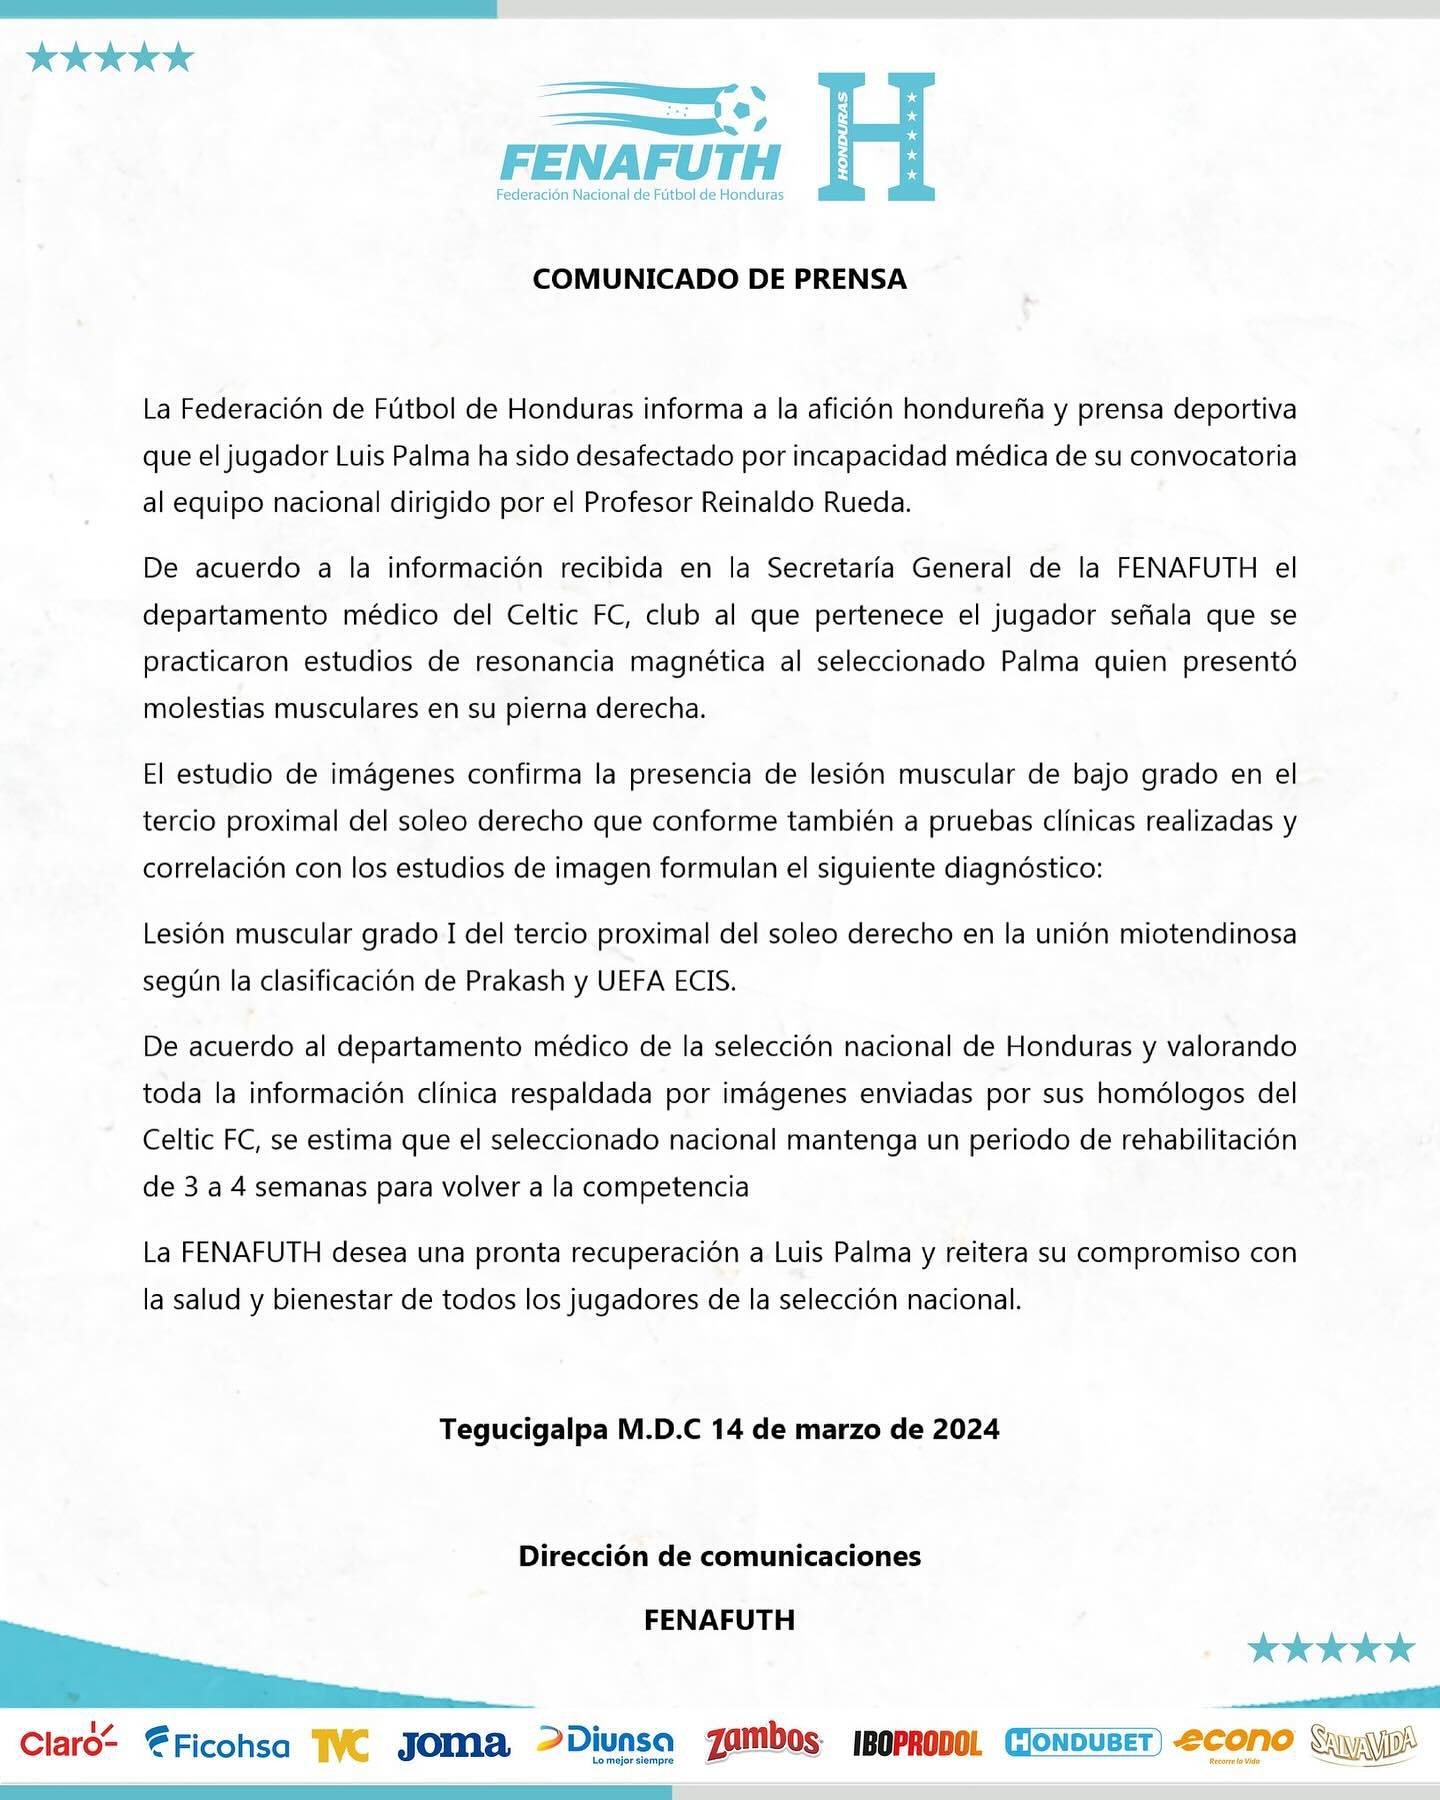 Este es el comunicado emitido por la Federación de Fútbol (Fenafuth) en relación al caso Luis Palma.